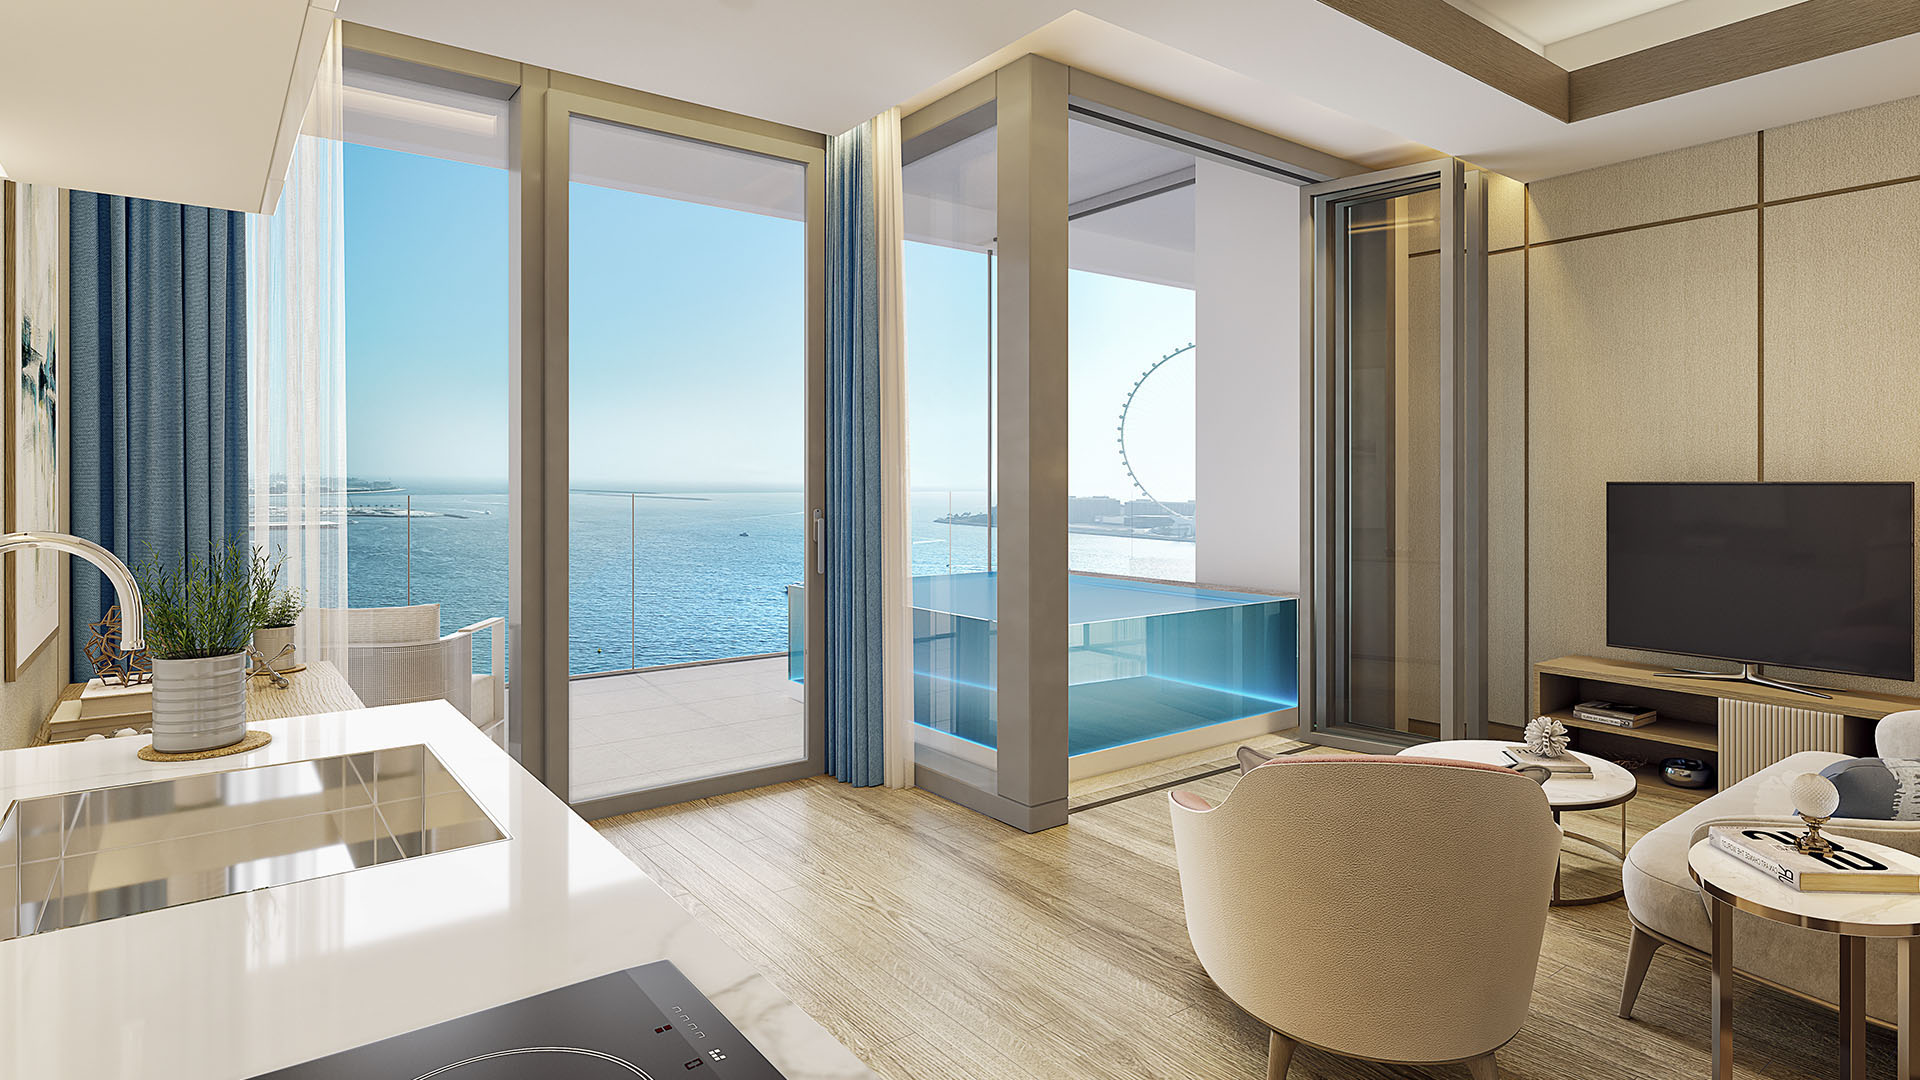 Five luxe jbr 5. Five Luxe JBR. Palace Beach Residence интерьеры. Liv Residence Dubai Marina. Five Luxe JBR 5 Dubai.